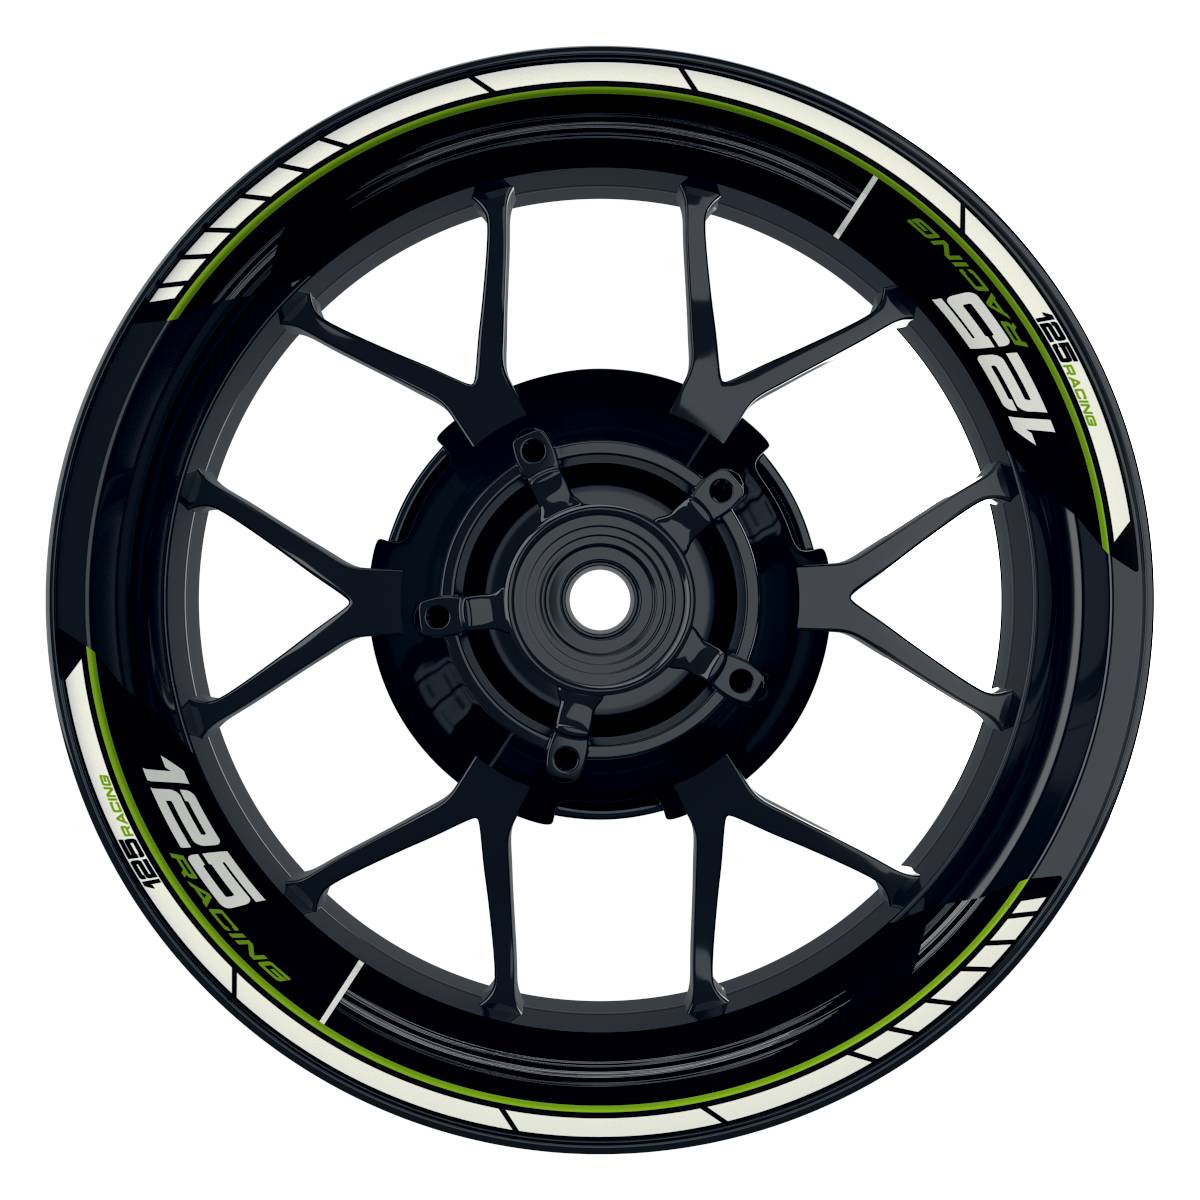 KTM Racing 125 Scratched schwarz gruen Frontansicht